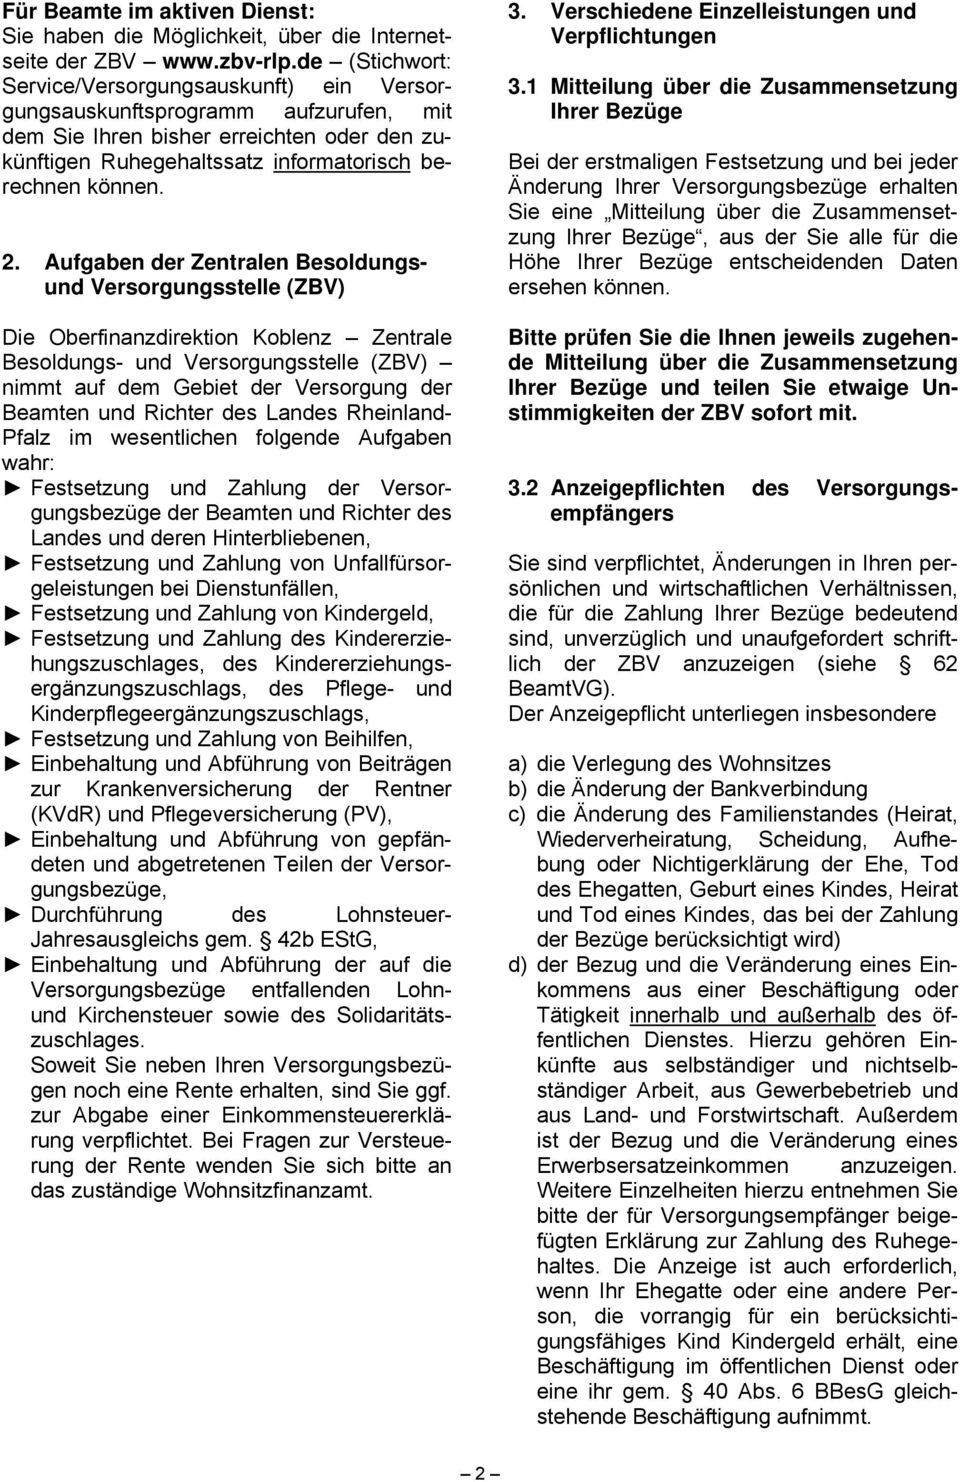 Aufgaben der Zentralen Besoldungsund Versorgungsstelle (ZBV) Die Oberfinanzdirektion Koblenz Zentrale Besoldungs- und Versorgungsstelle (ZBV) nimmt auf dem Gebiet der Versorgung der Beamten und